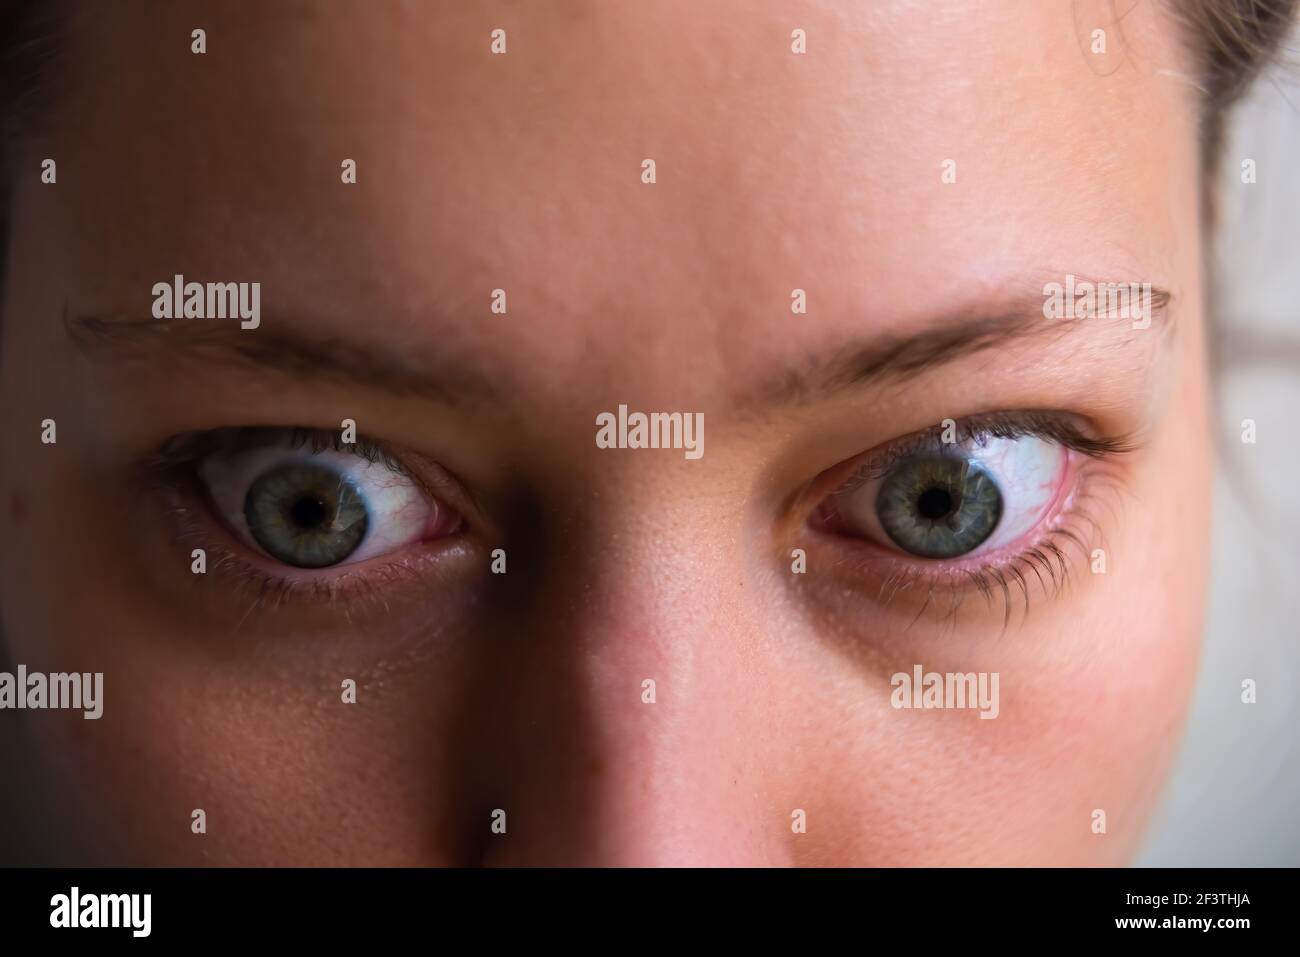 Makroaufnahme von jungen Frauen Gesicht mit Grave-Krankheit Hyperthyreose Symptome der Ophthalmopathie prall Augen proptosis Ödem Stockfoto